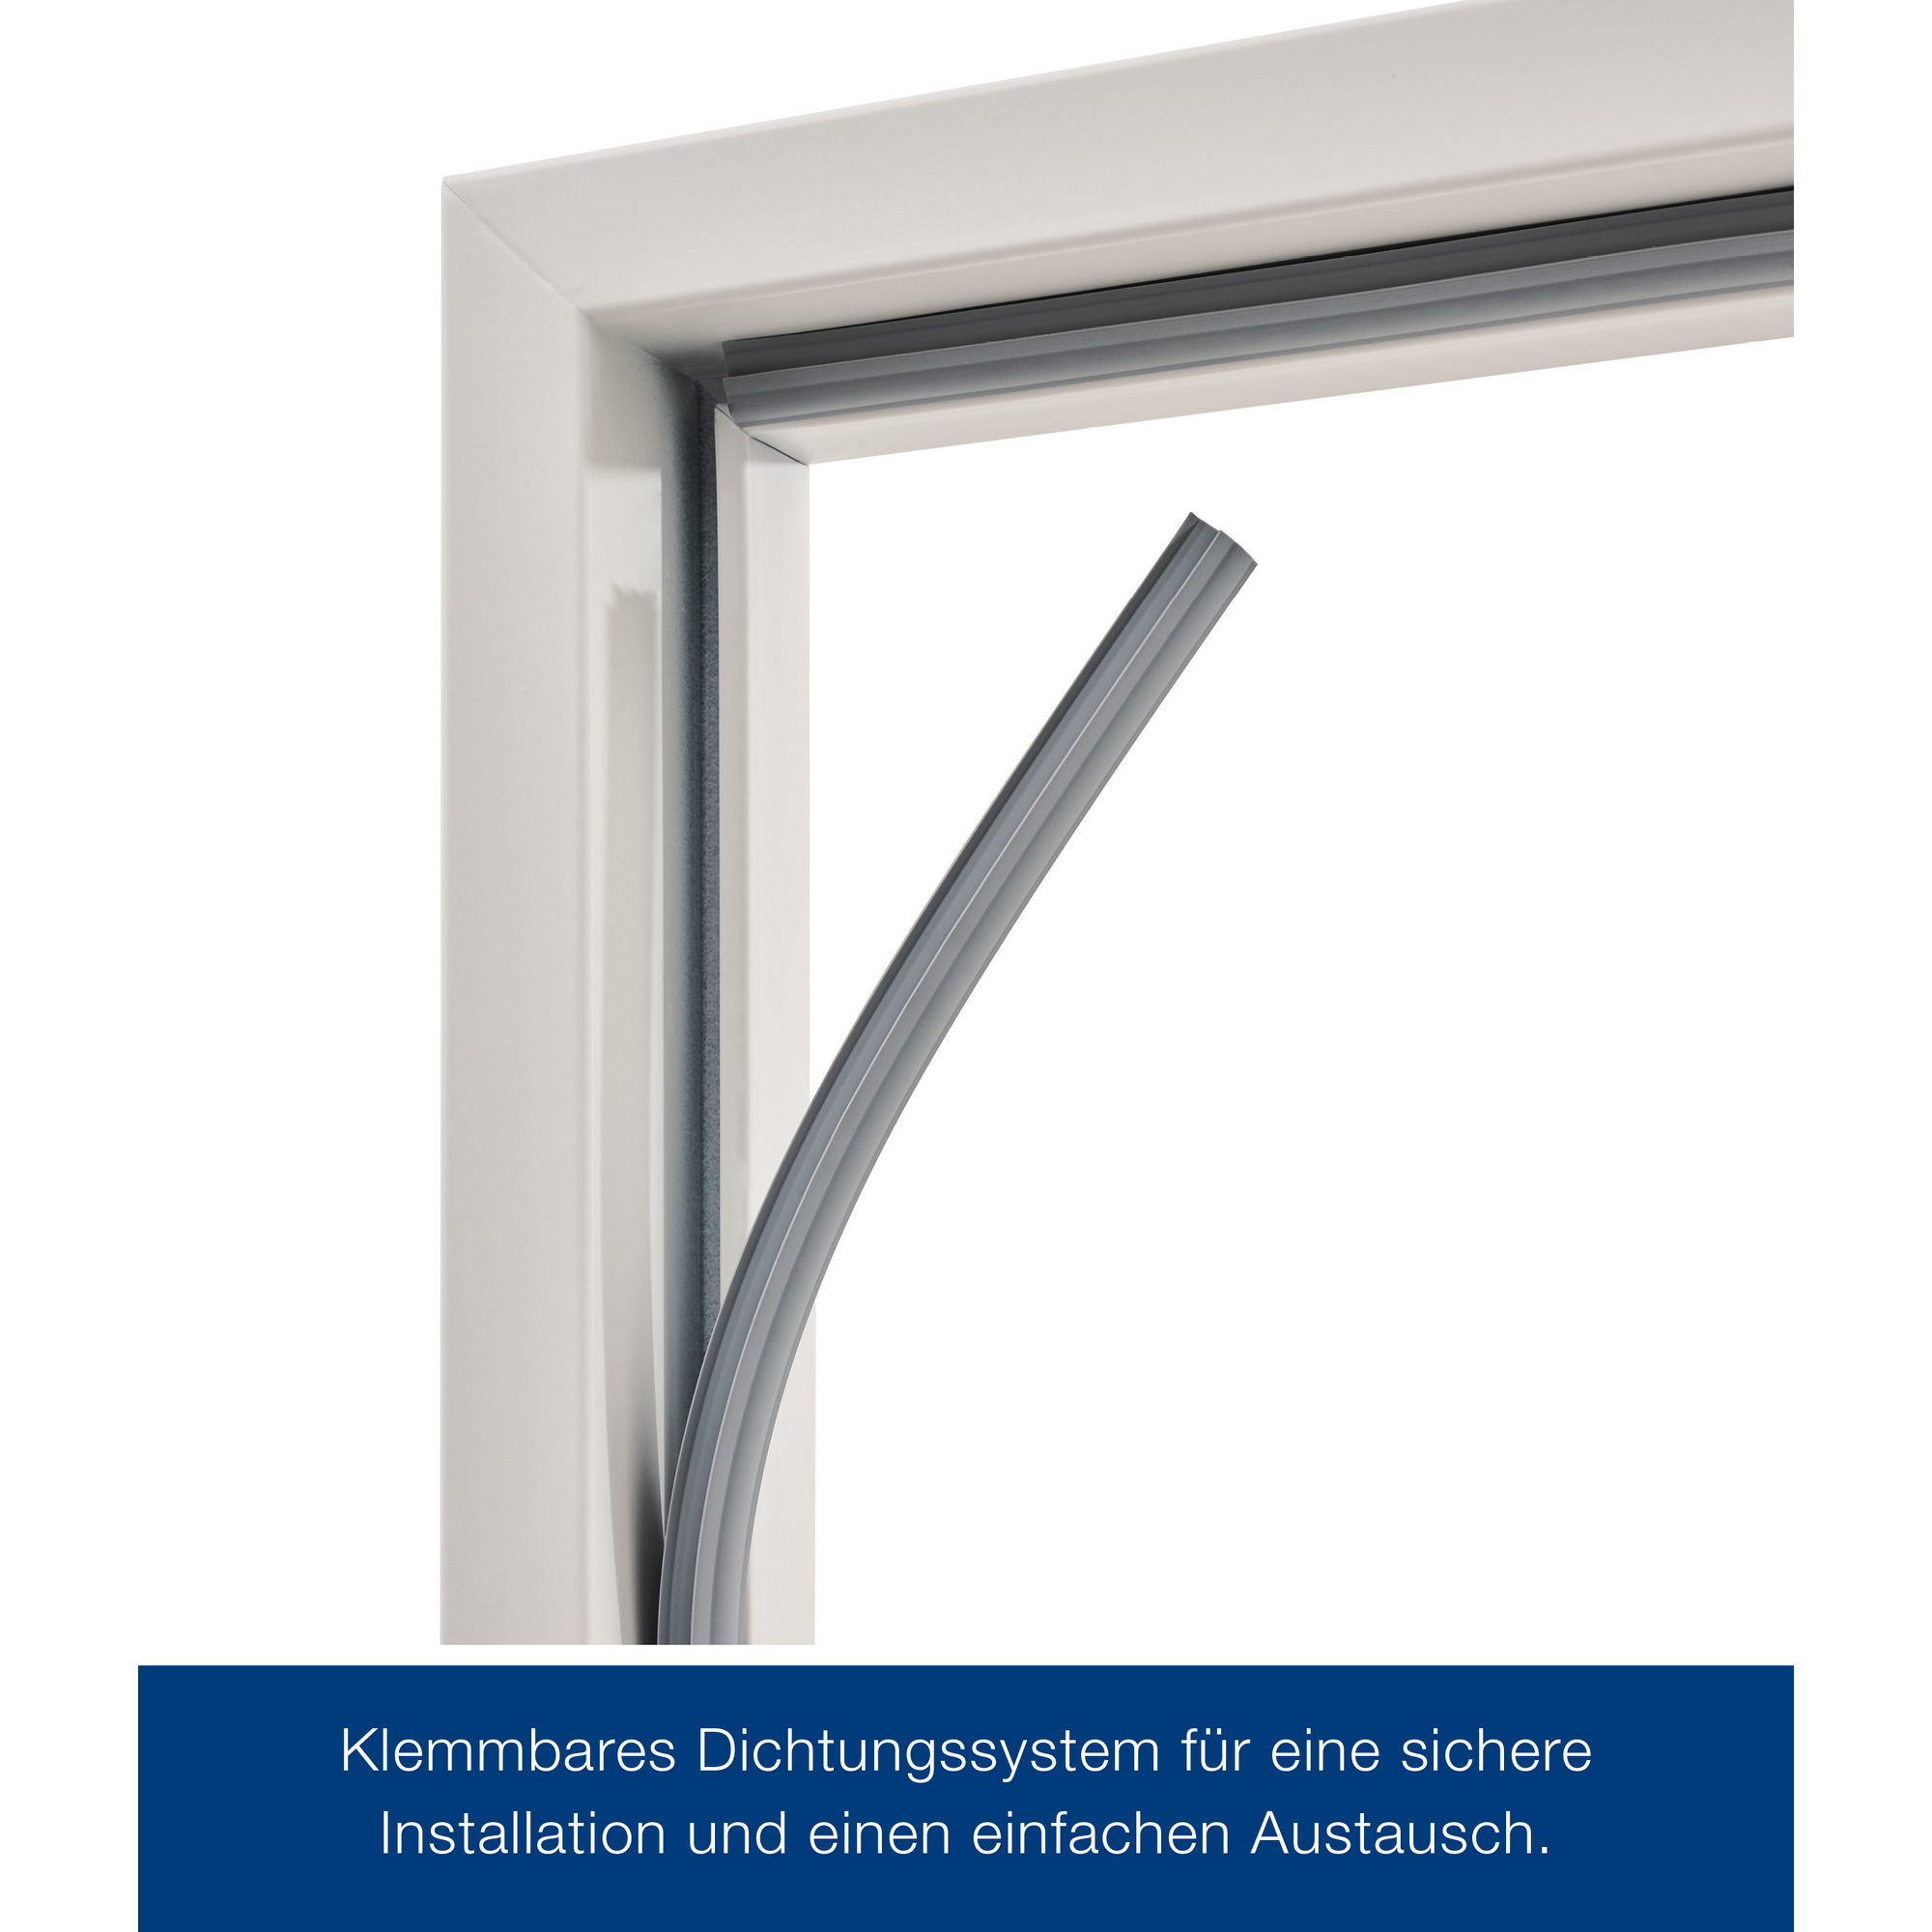 ZK-Innentür-Element Anschlag rechts weiß 100 x 200 cm + product picture